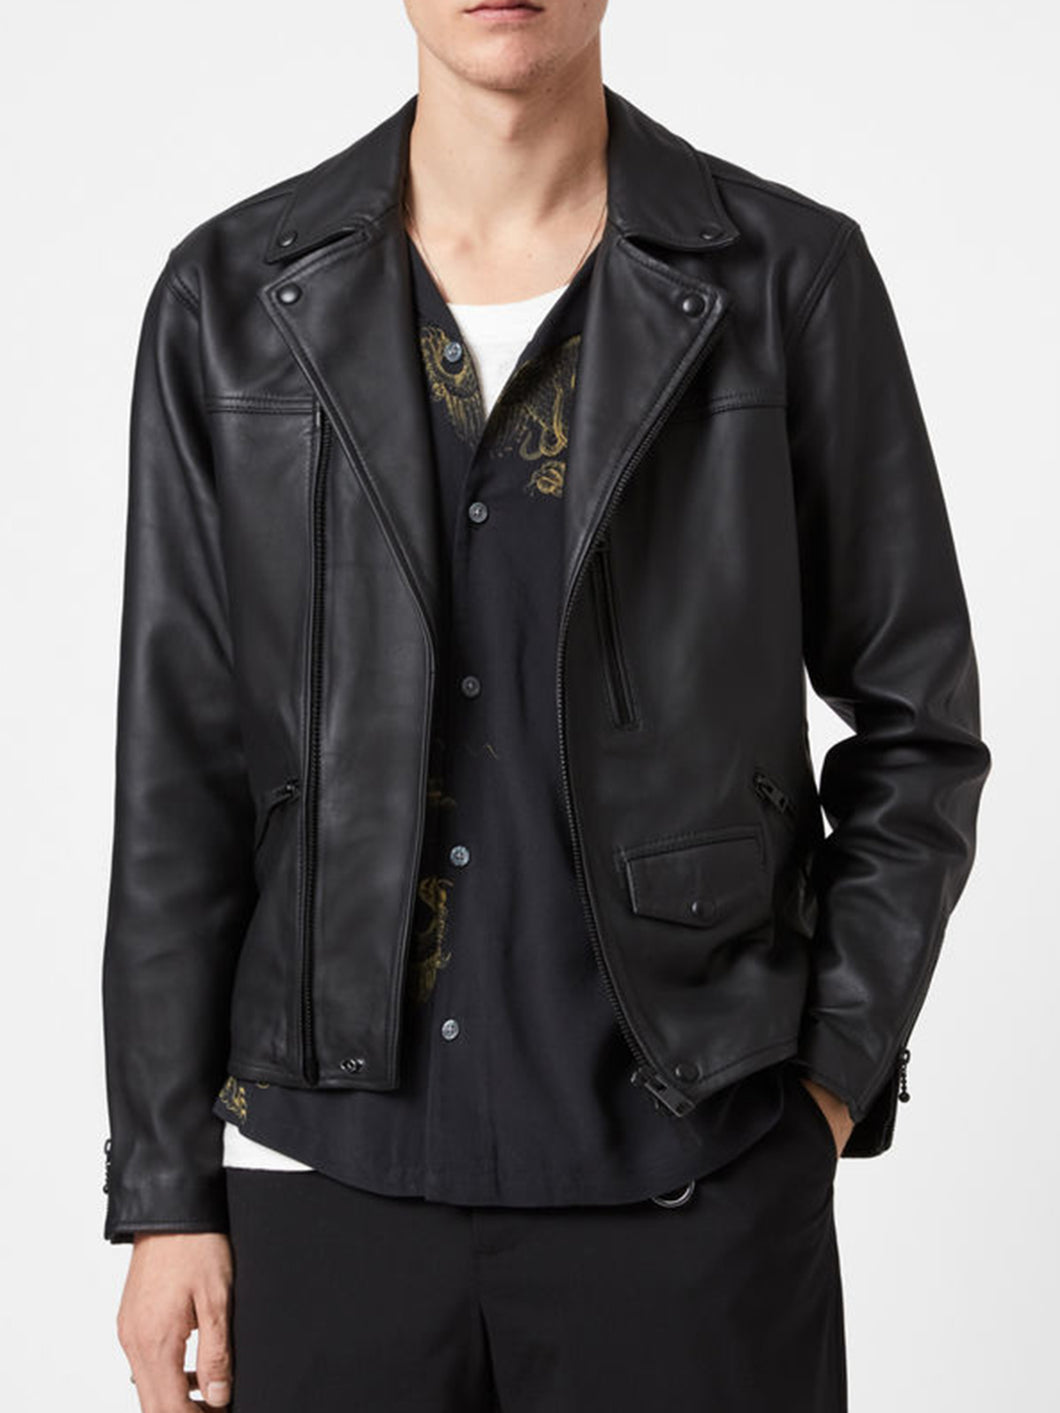 Men's Black Real Leather Biker Jacket